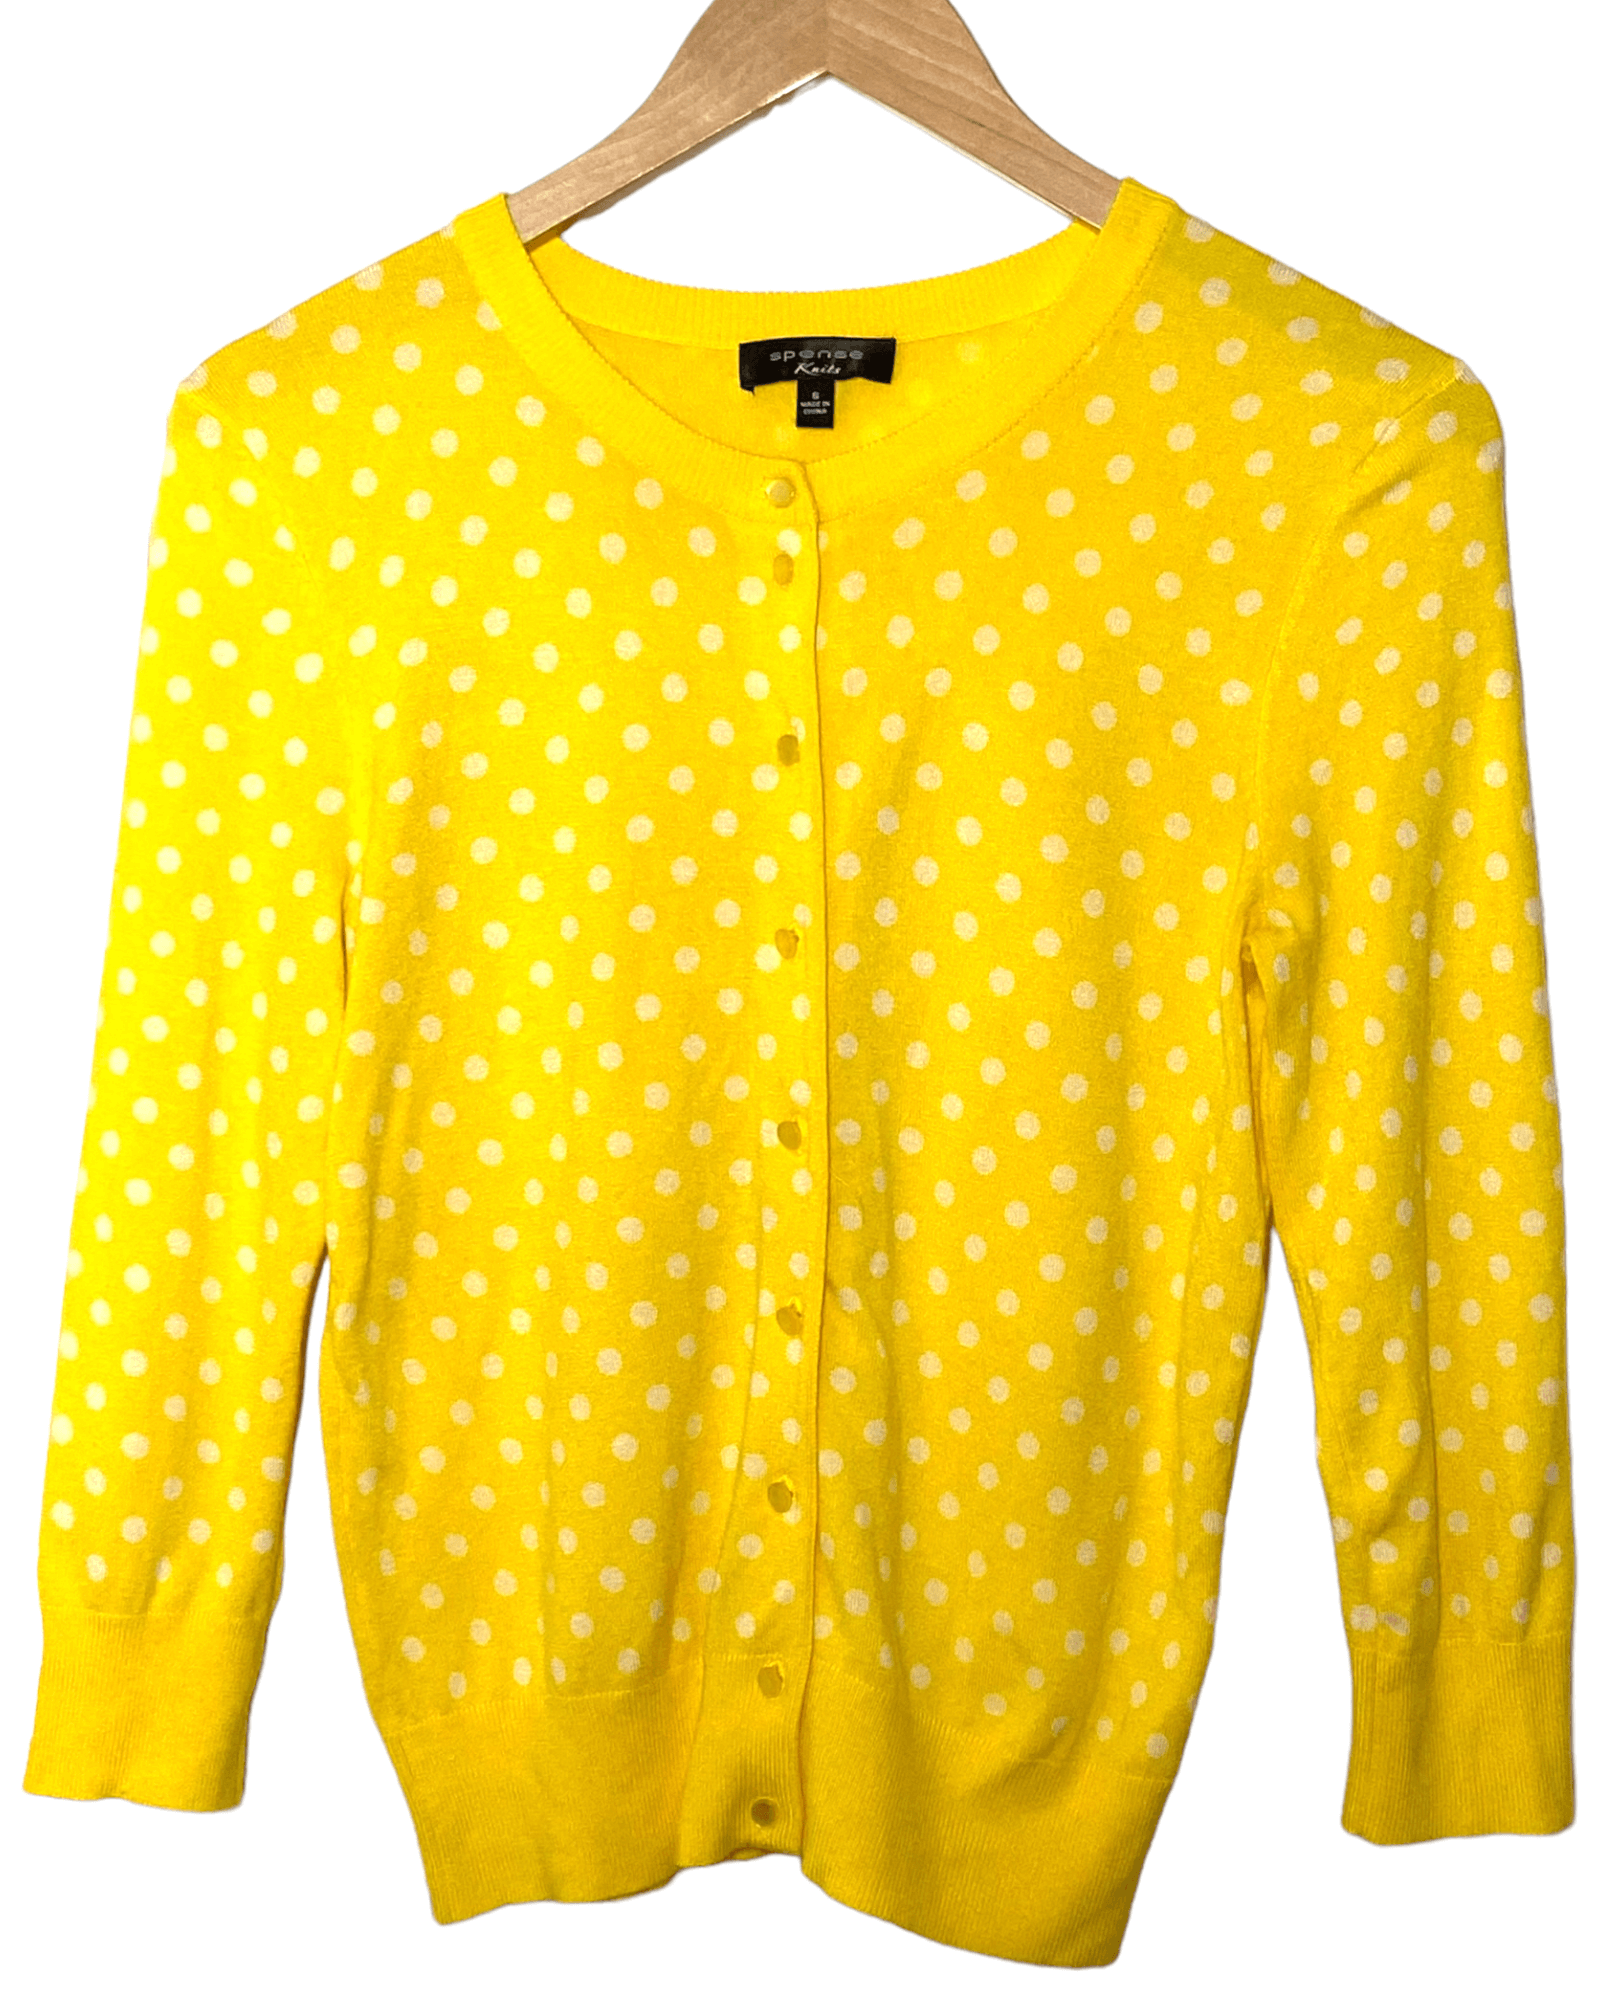 Bright Winter SPENSE KNITS yellow dot cardigan sweater